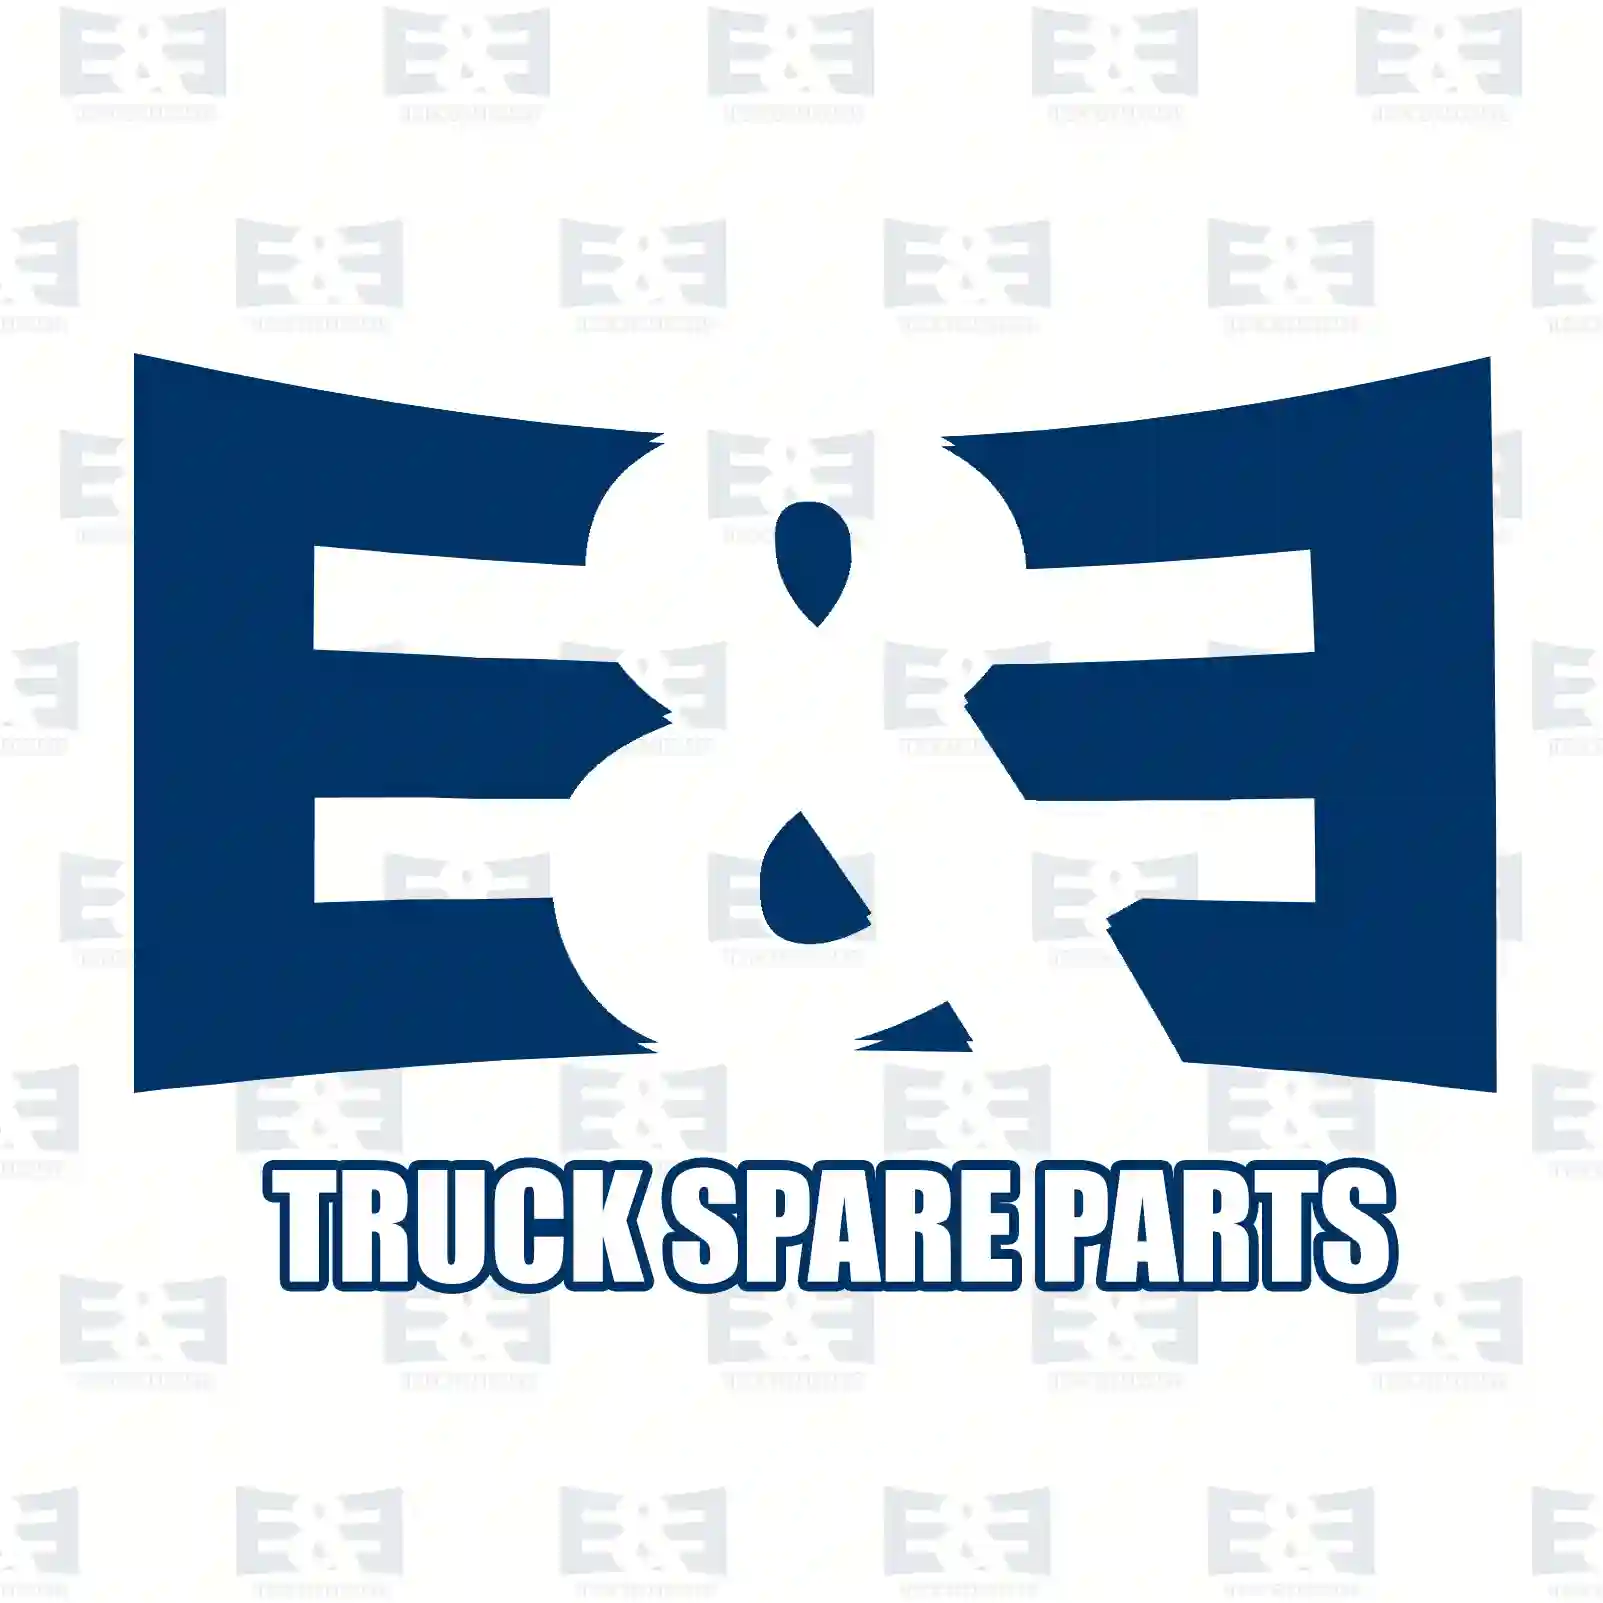 Aluminium washer, 2E2285465, 278134, 35402, 812415, , , , ||  2E2285465 E&E Truck Spare Parts | Truck Spare Parts, Auotomotive Spare Parts Aluminium washer, 2E2285465, 278134, 35402, 812415, , , , ||  2E2285465 E&E Truck Spare Parts | Truck Spare Parts, Auotomotive Spare Parts